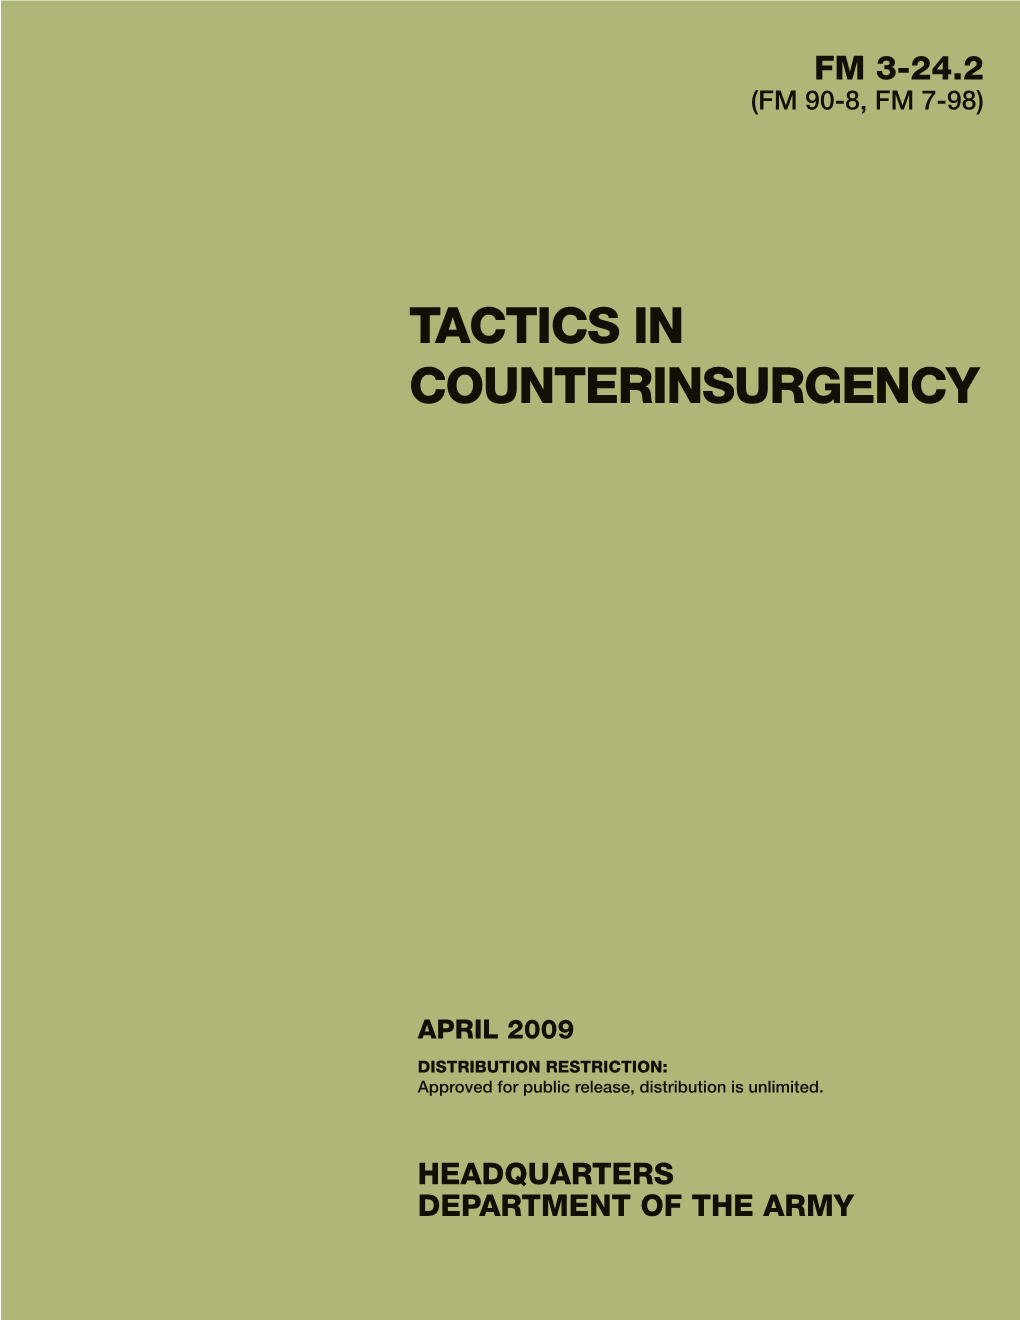 FM 3-24.2. Tactics in Counterinsurgency